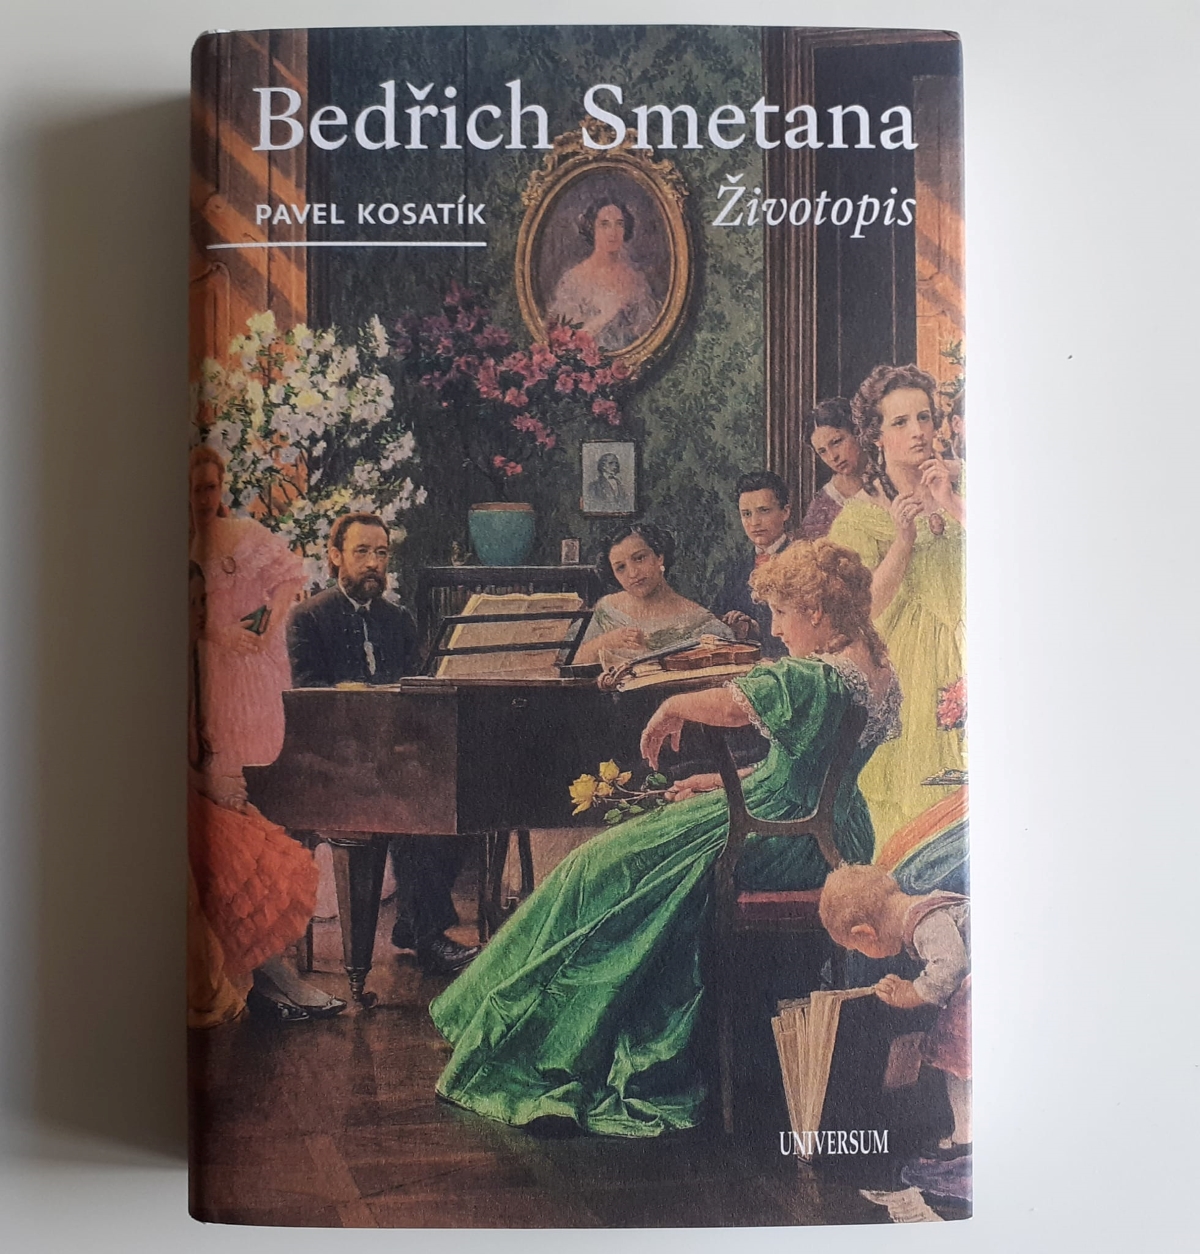 Přebal životopisu Bedřicha Smetany od Pavla Kosatíka (zdroj Pavel Kosatík)